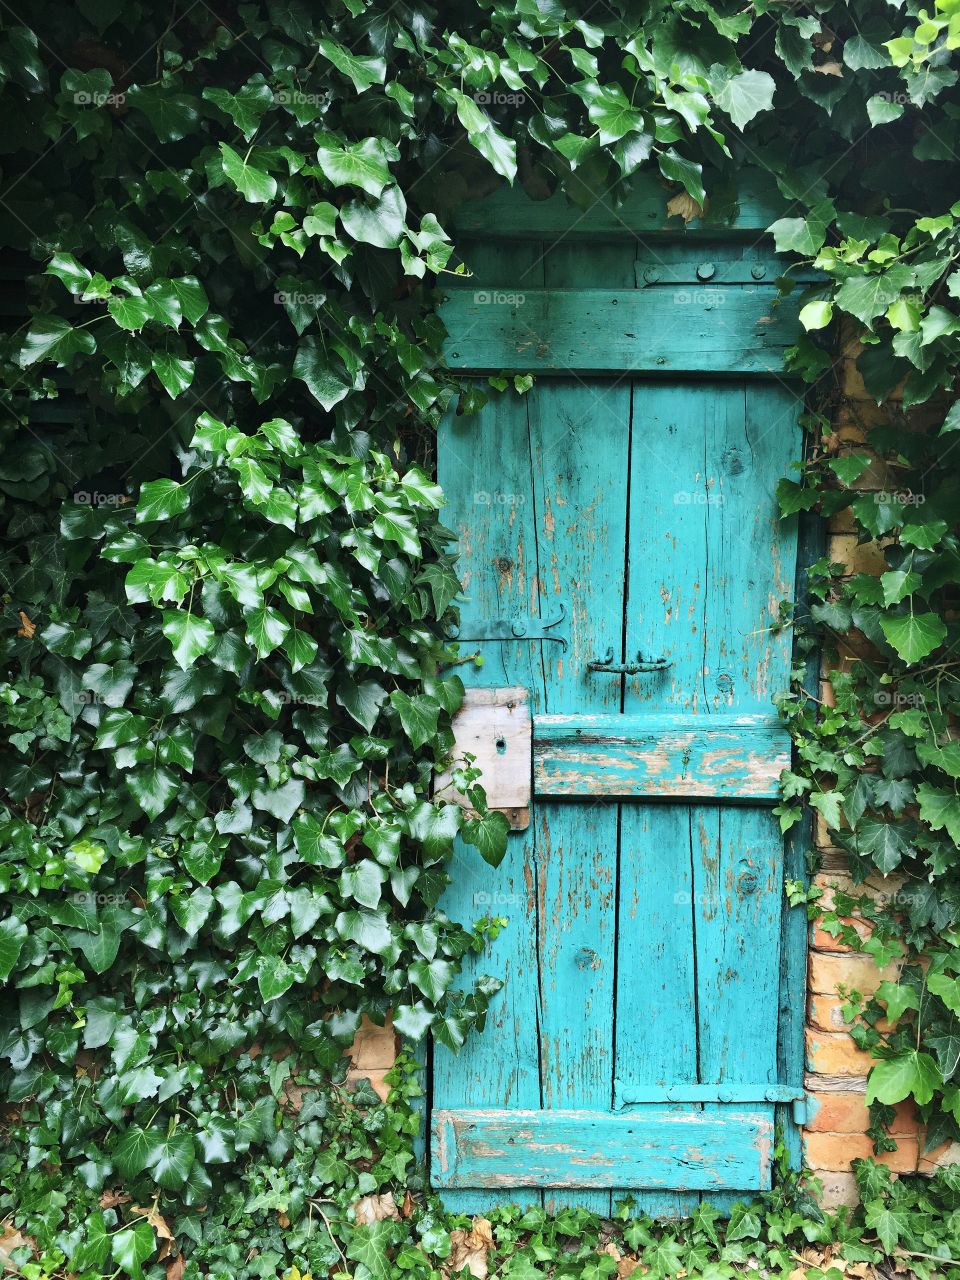 A quiet doorway in Croatia 